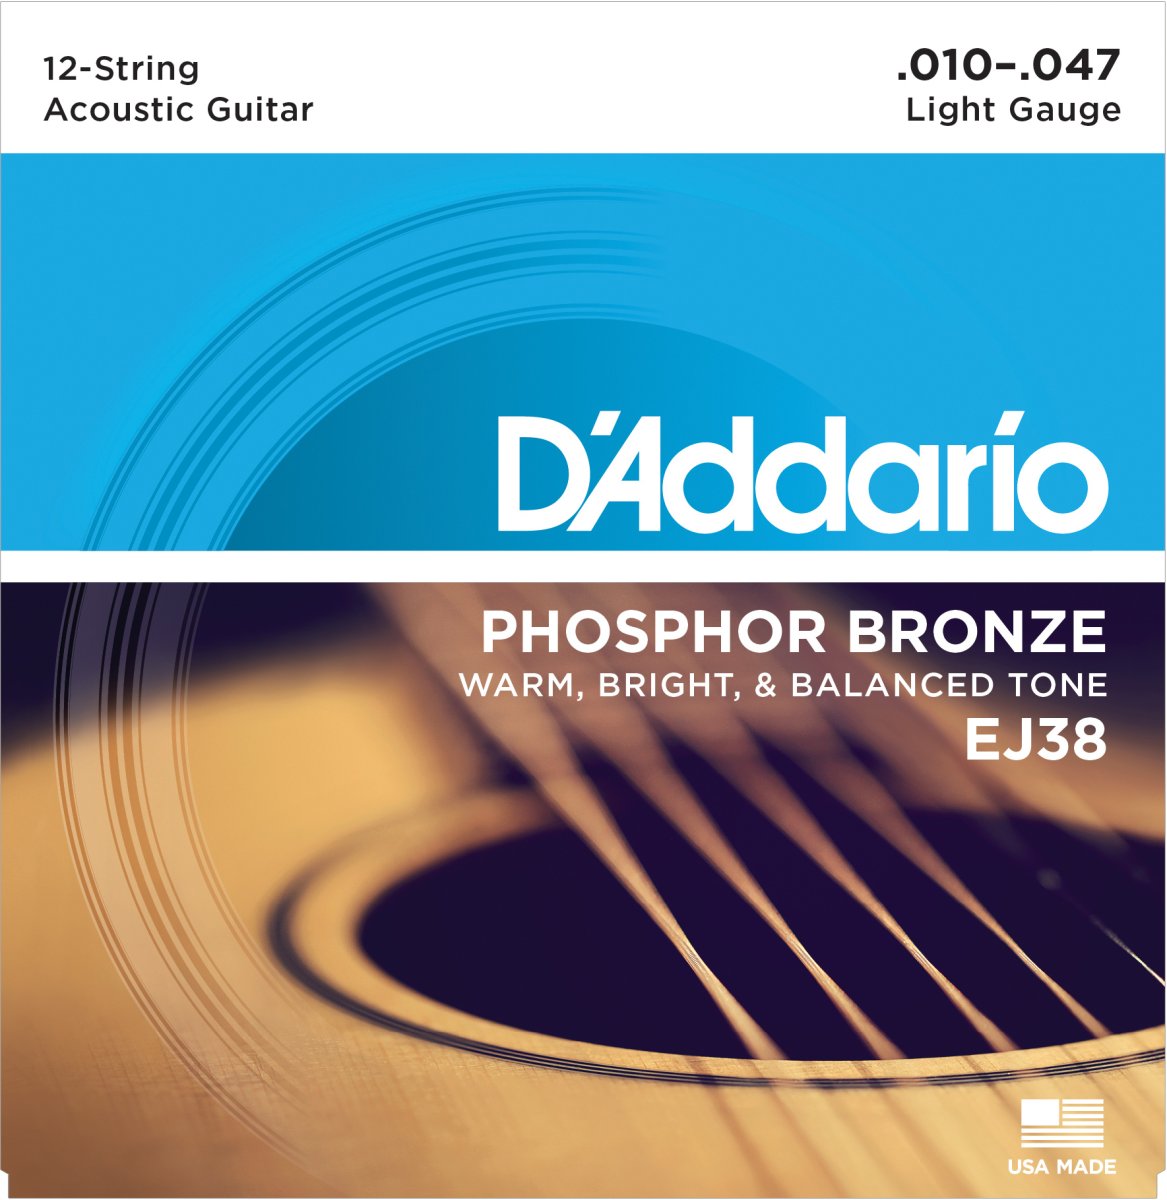 Струны дадарио 11 52 для акустической гитары